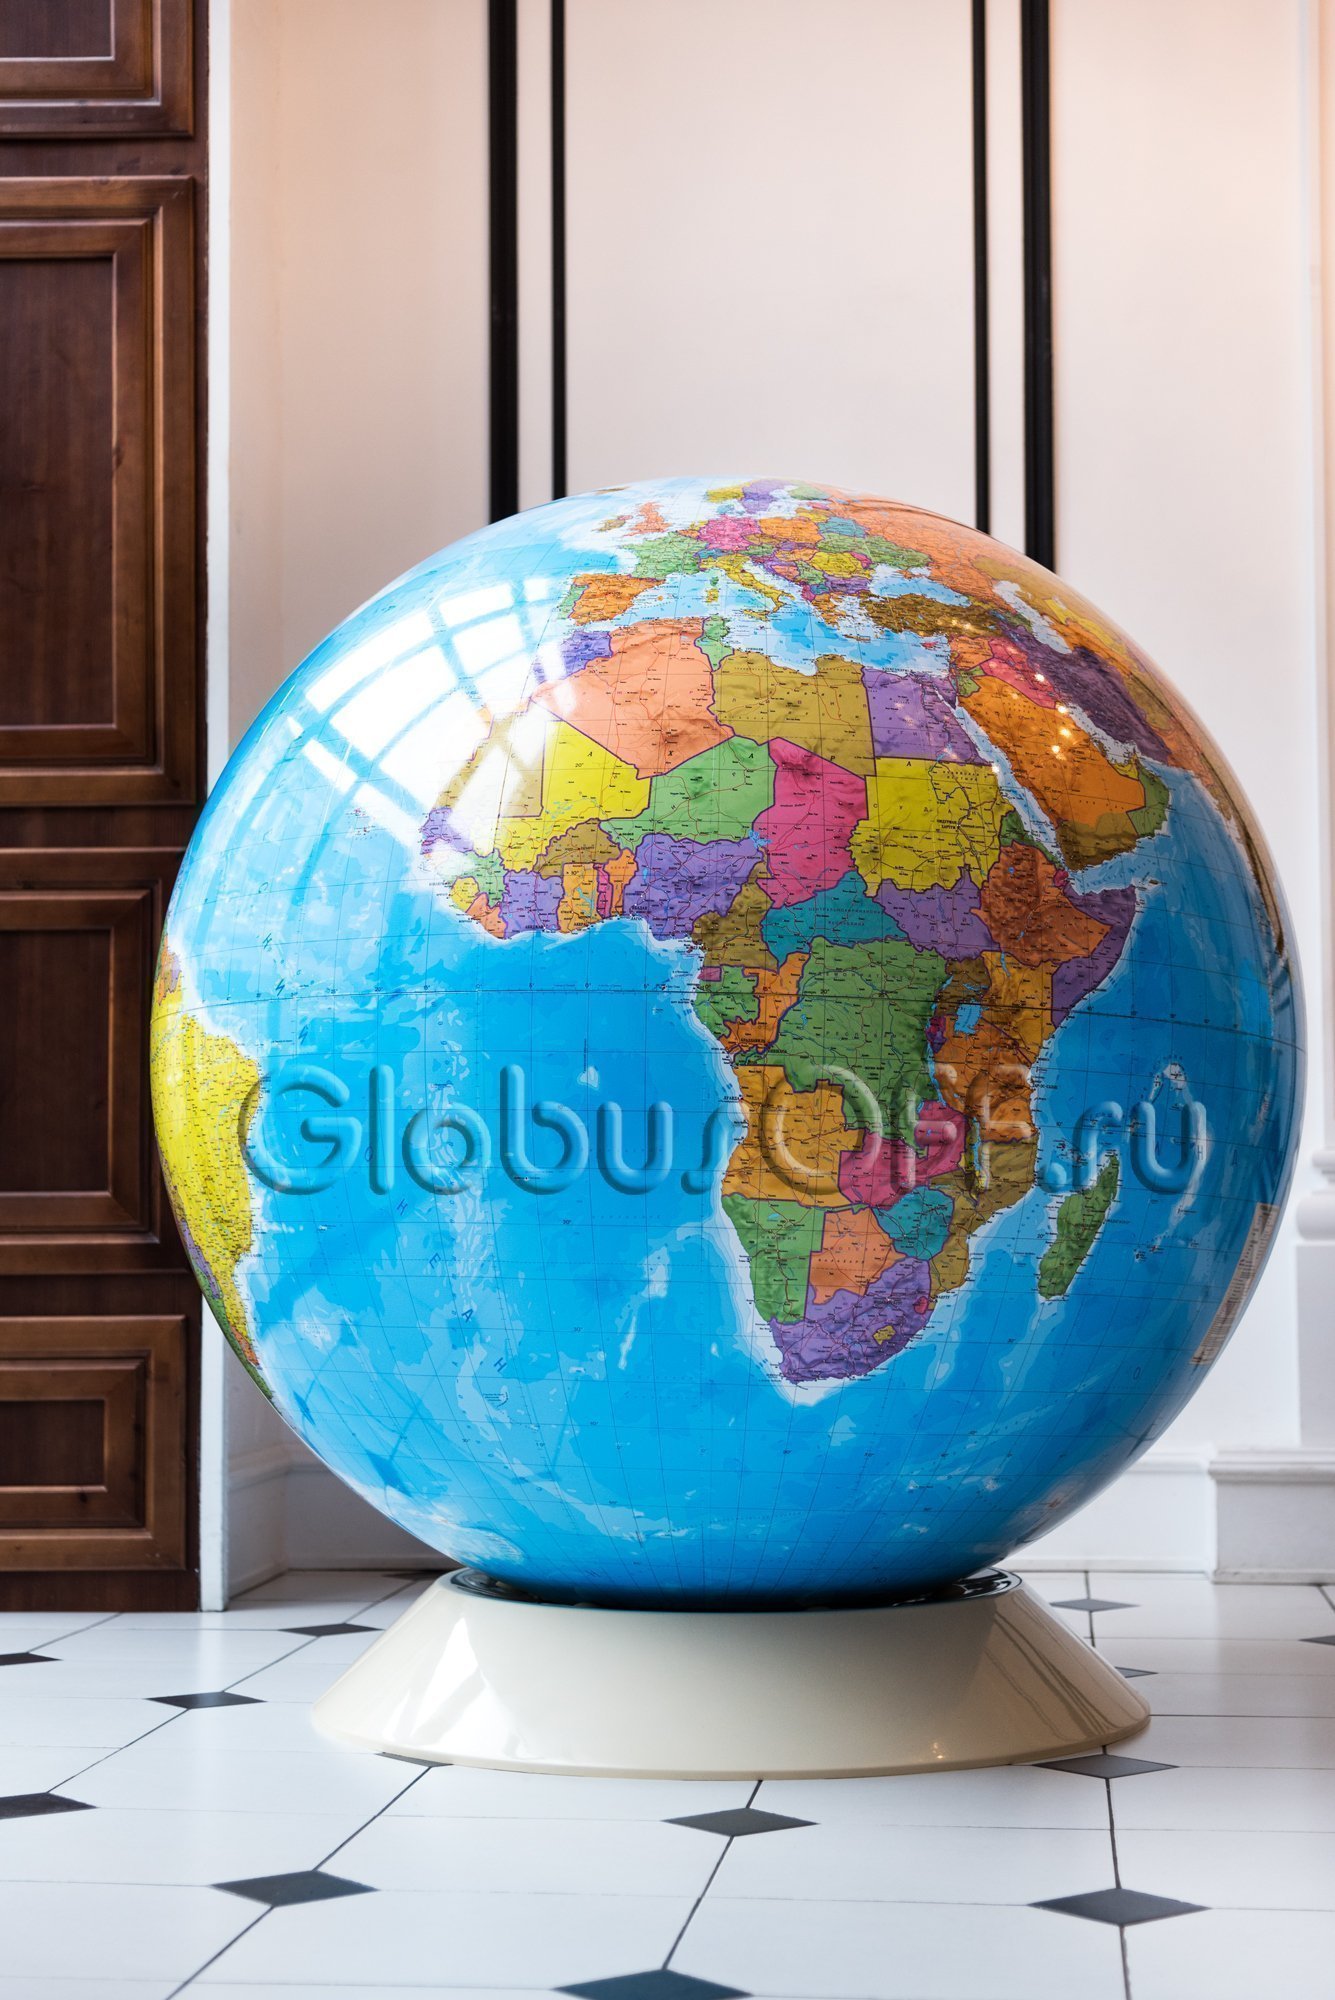 Глобус большого размера с политической картой мира. Д=130 см.. Интернет  магазин GLOBUSOFF.RU.